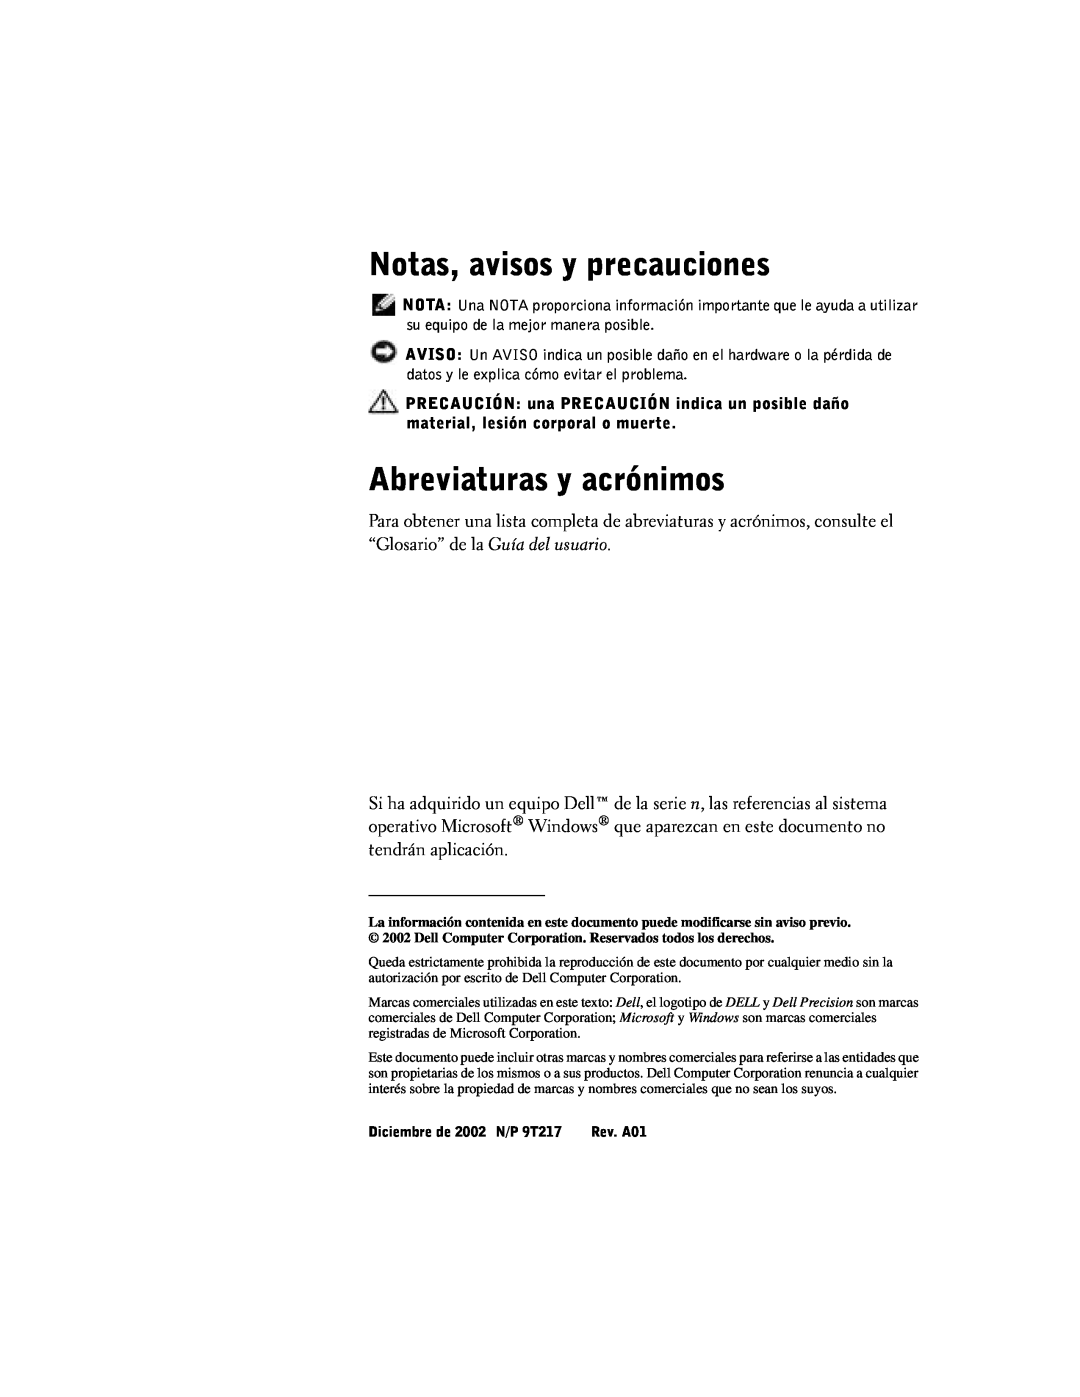 Dell manual Notas, avisos y precauciones, Abreviaturas y acrónimos, Diciembre de 2002 N/P 9T217 